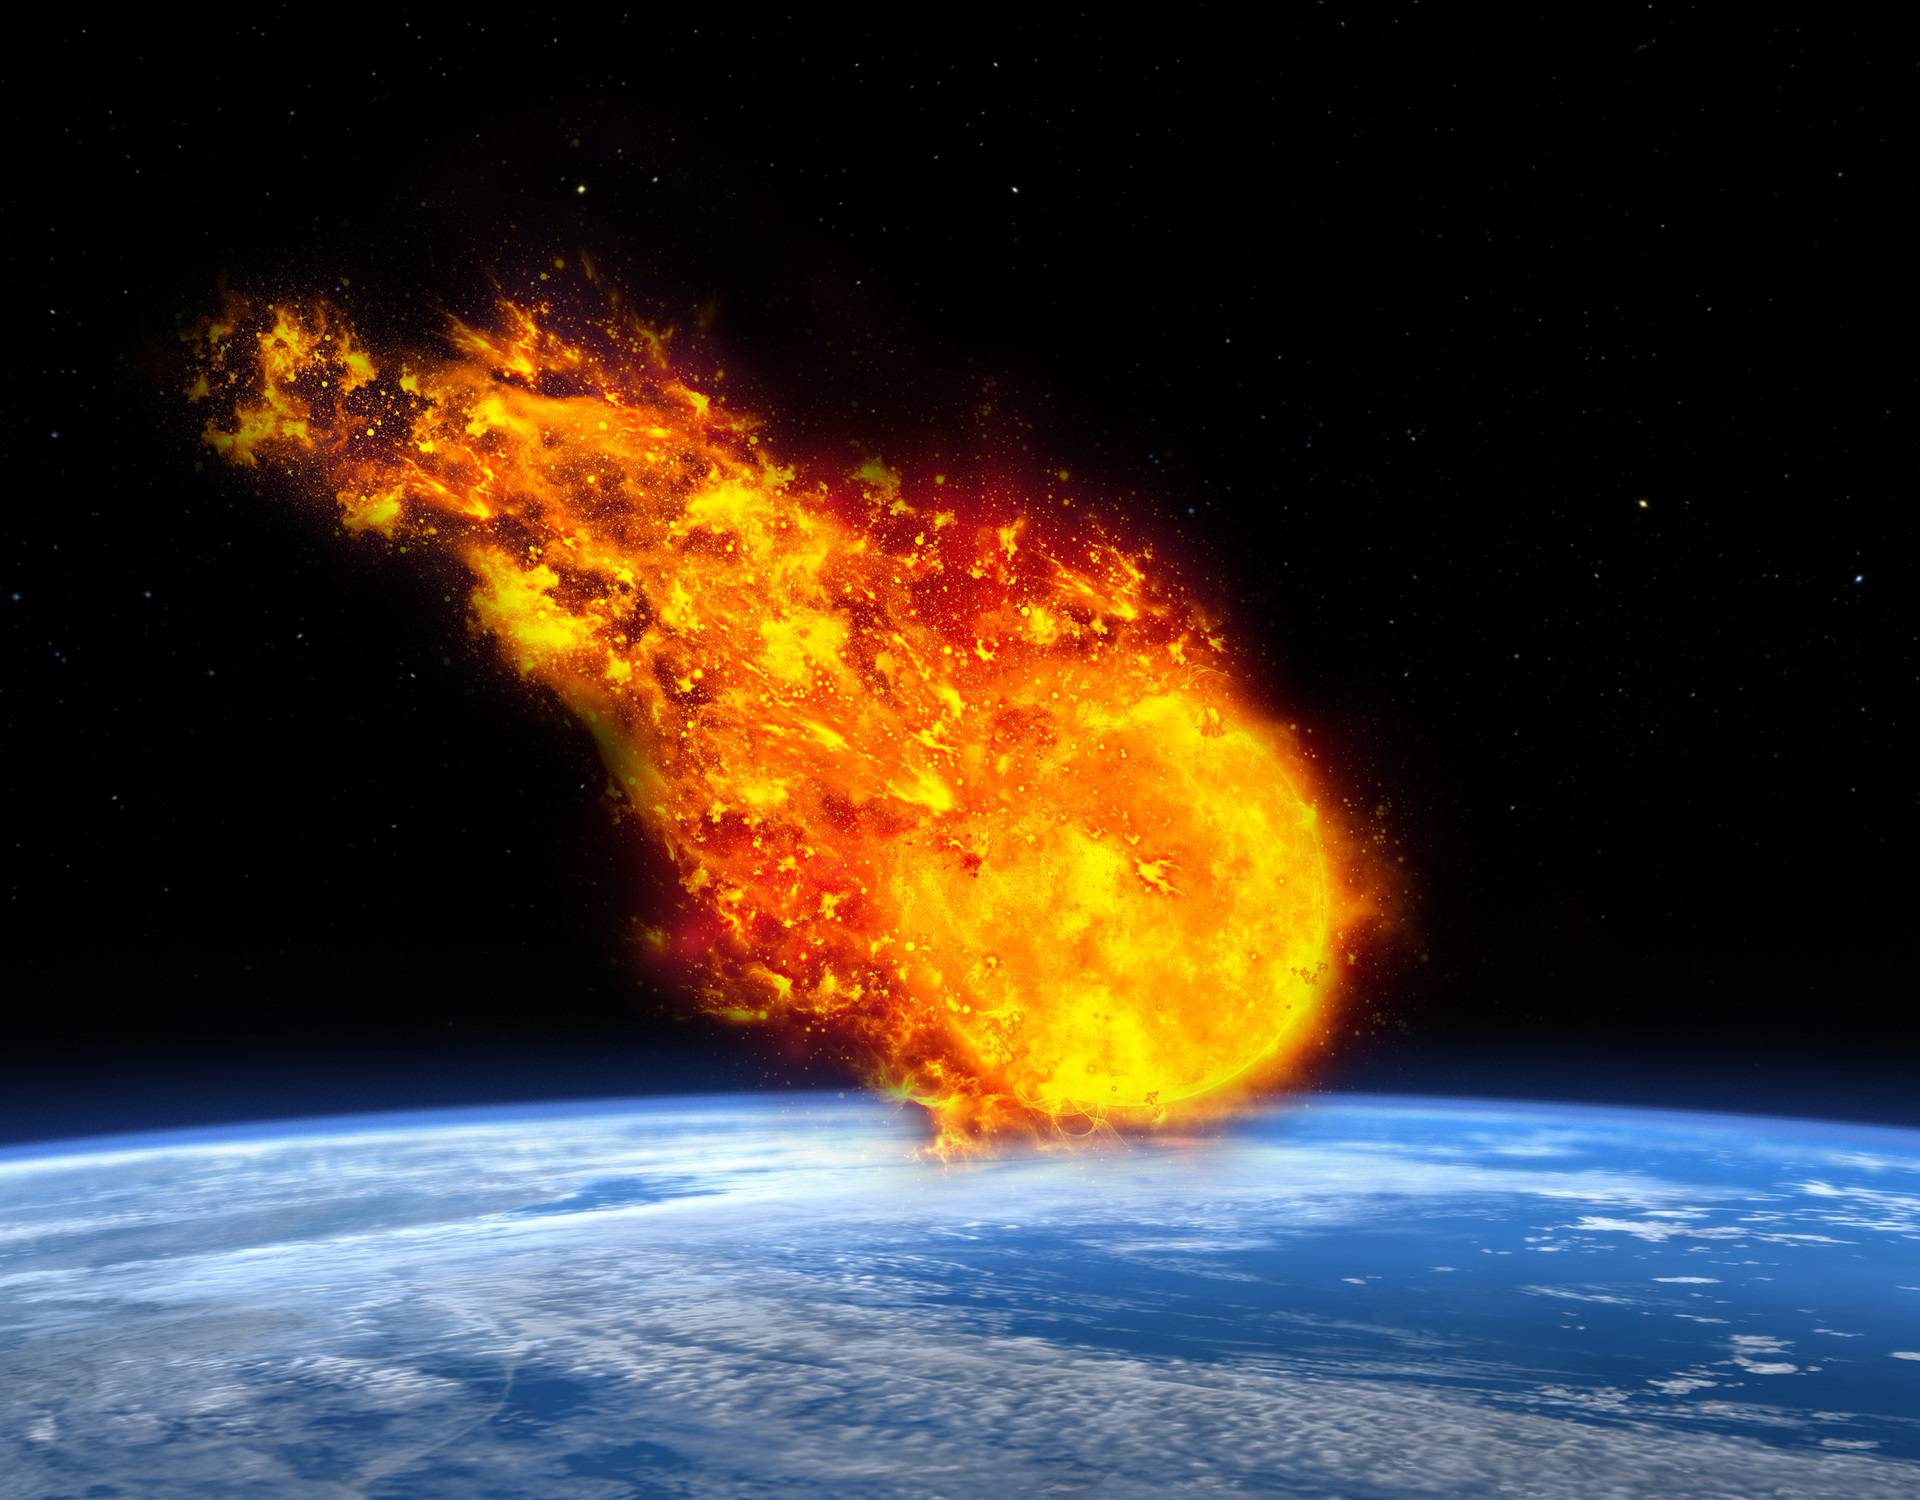 Tjednima nismo znali: Iznad Zemlje je eksplodirao meteor